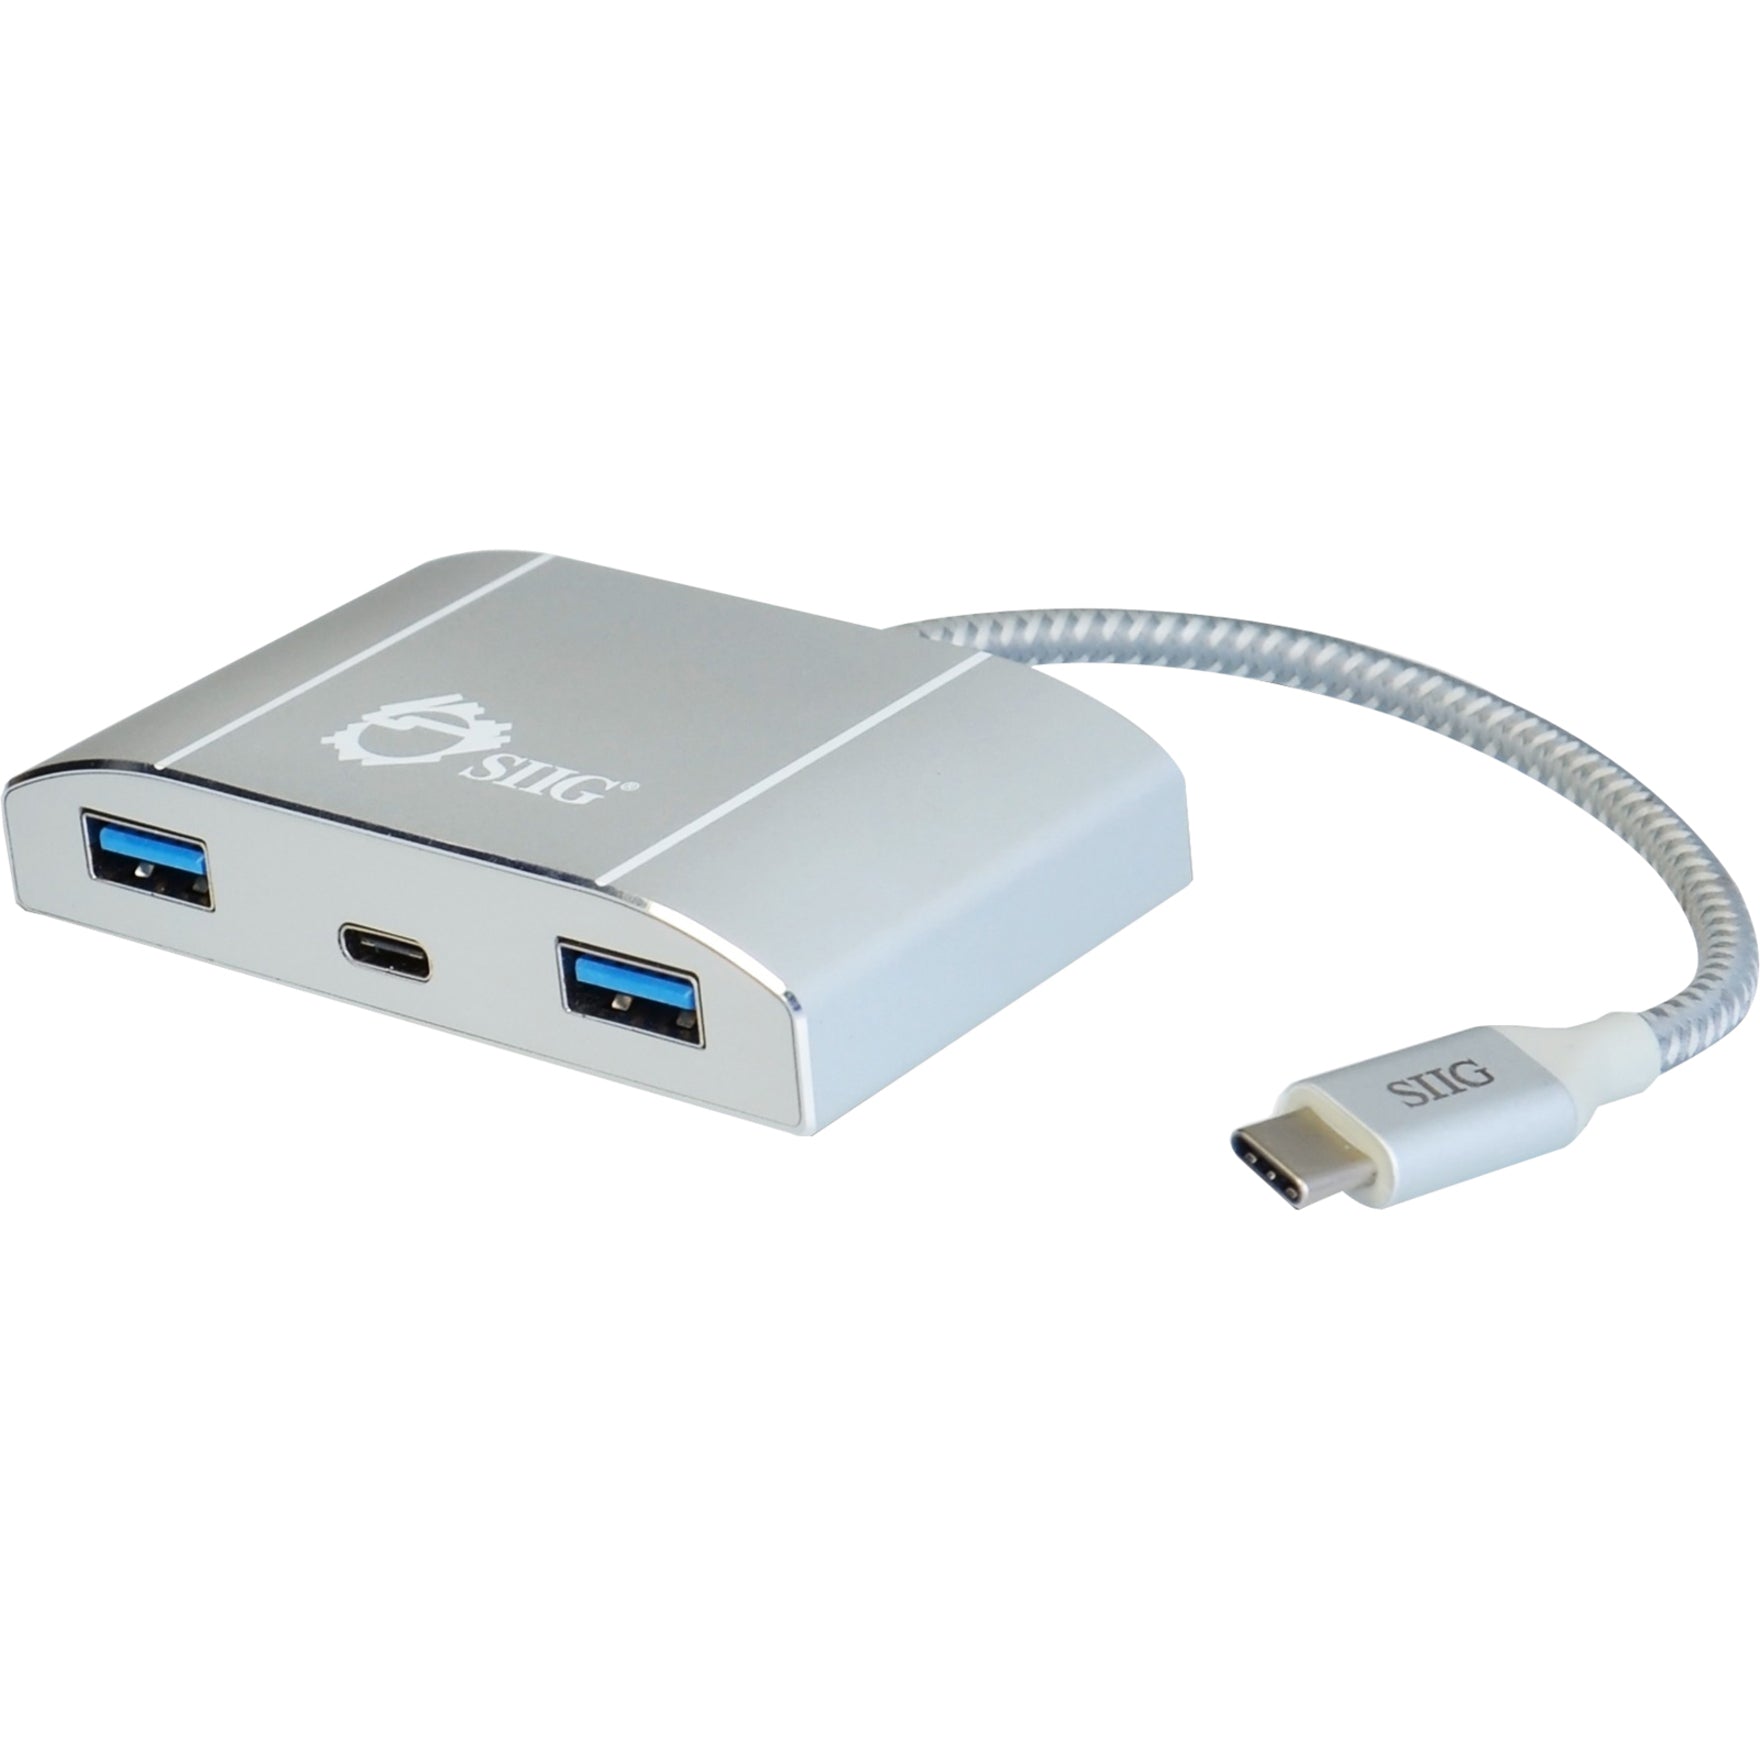 시그 JU-H30C11-S1 USB-C에서 4포트 USB 3.0 허브와 PD 충전 - 연결 옵션 증가